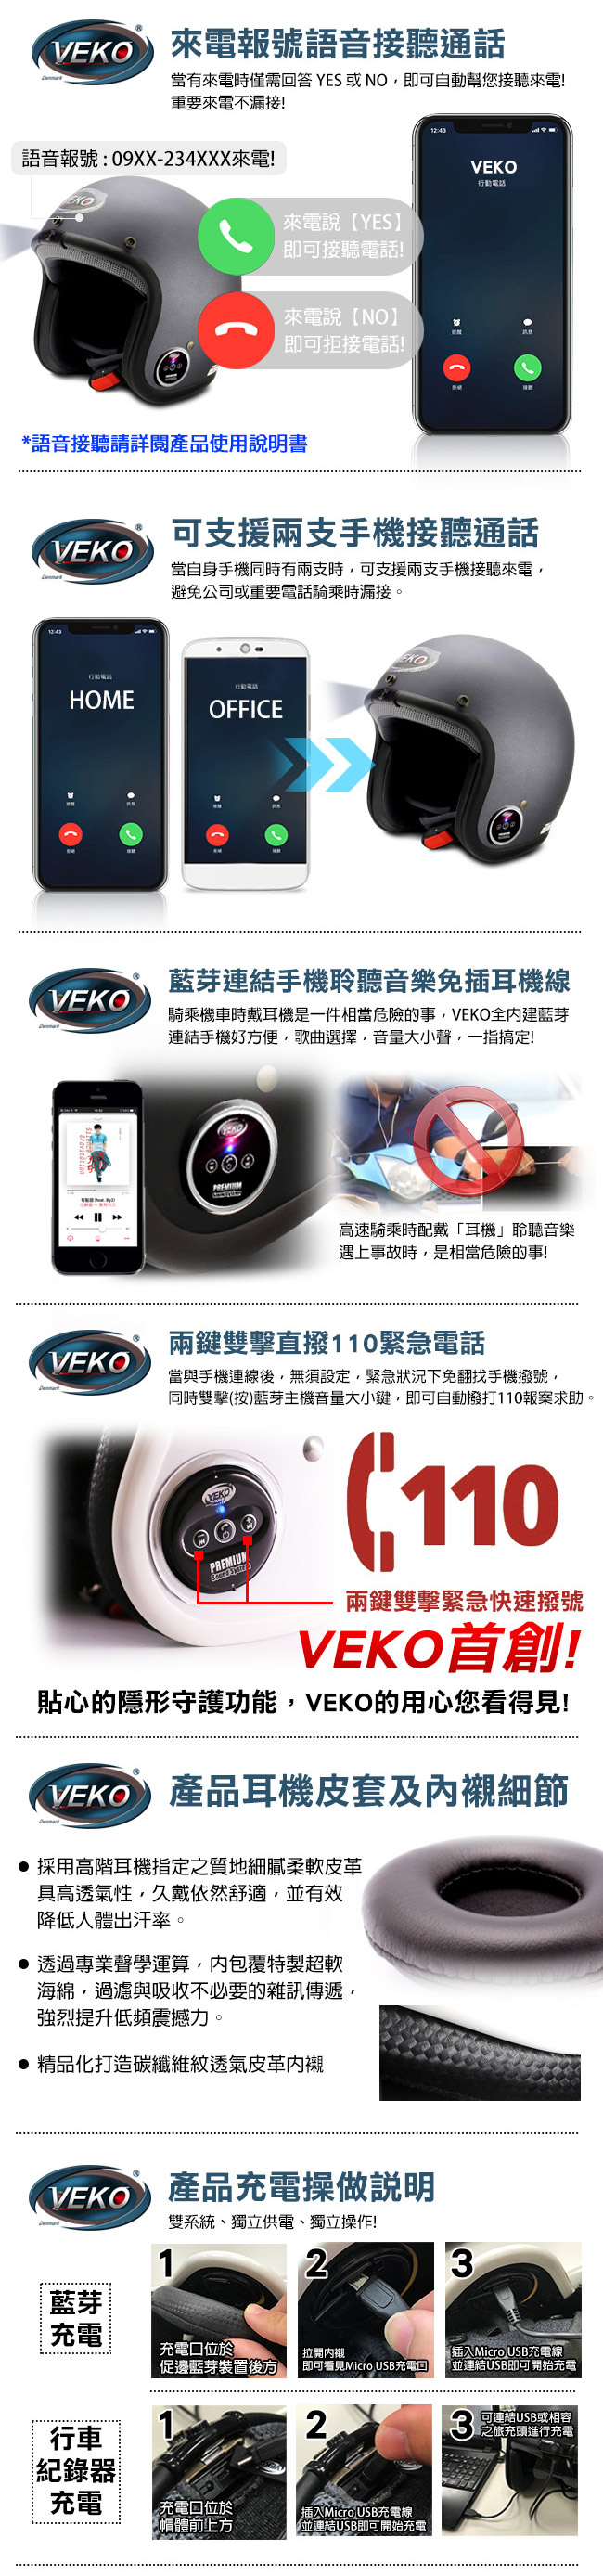 VEKO二代隱裝式720P行車紀錄器+內建雙聲道藍芽通訊安全帽(雅光尊爵黑)